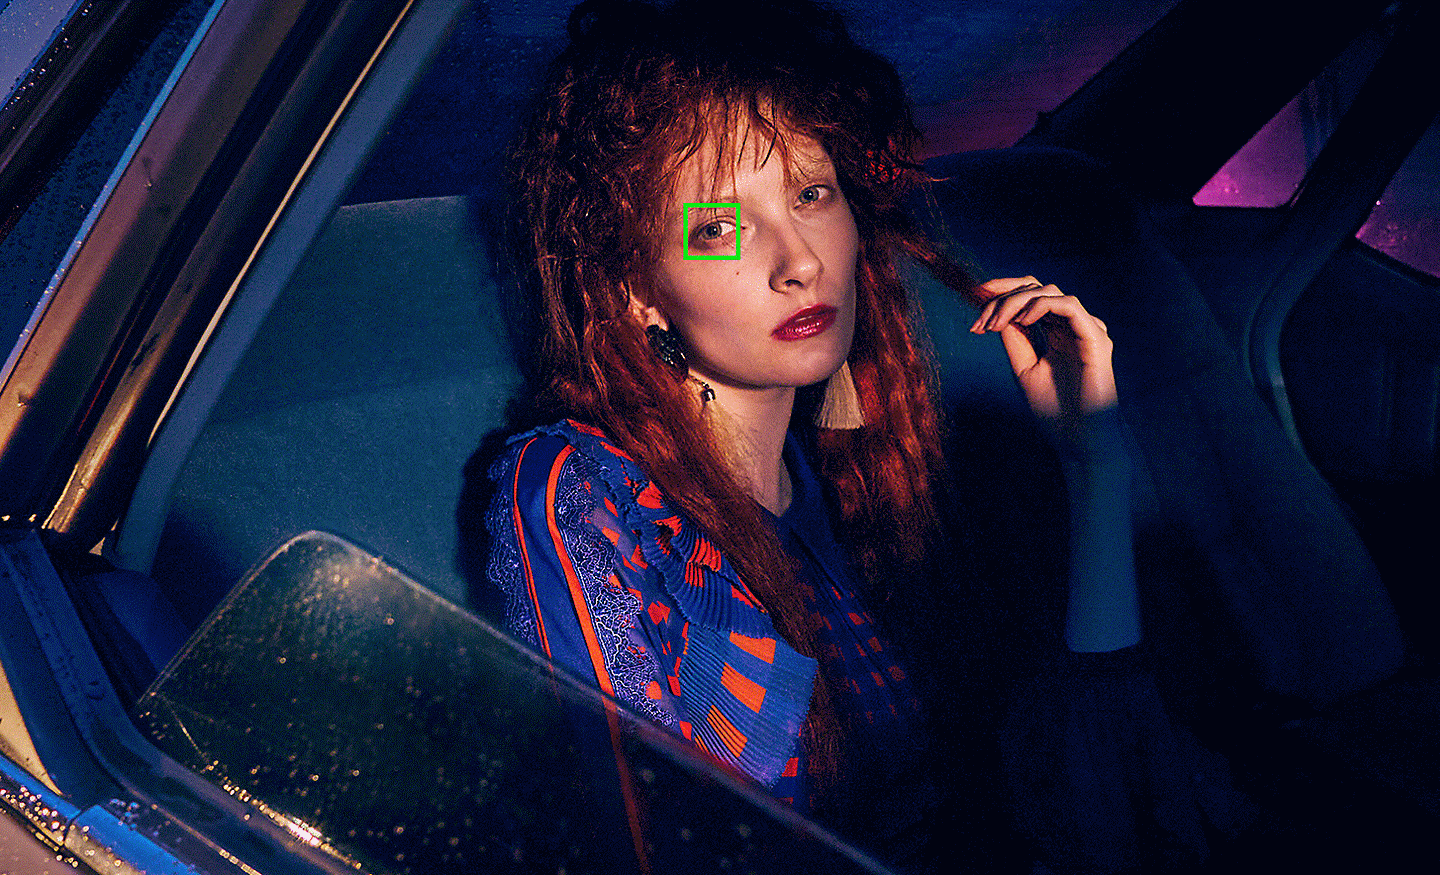 Snímka ženy v aute pri slabom svetle so zeleným bodom automatického zaostrovania na oku